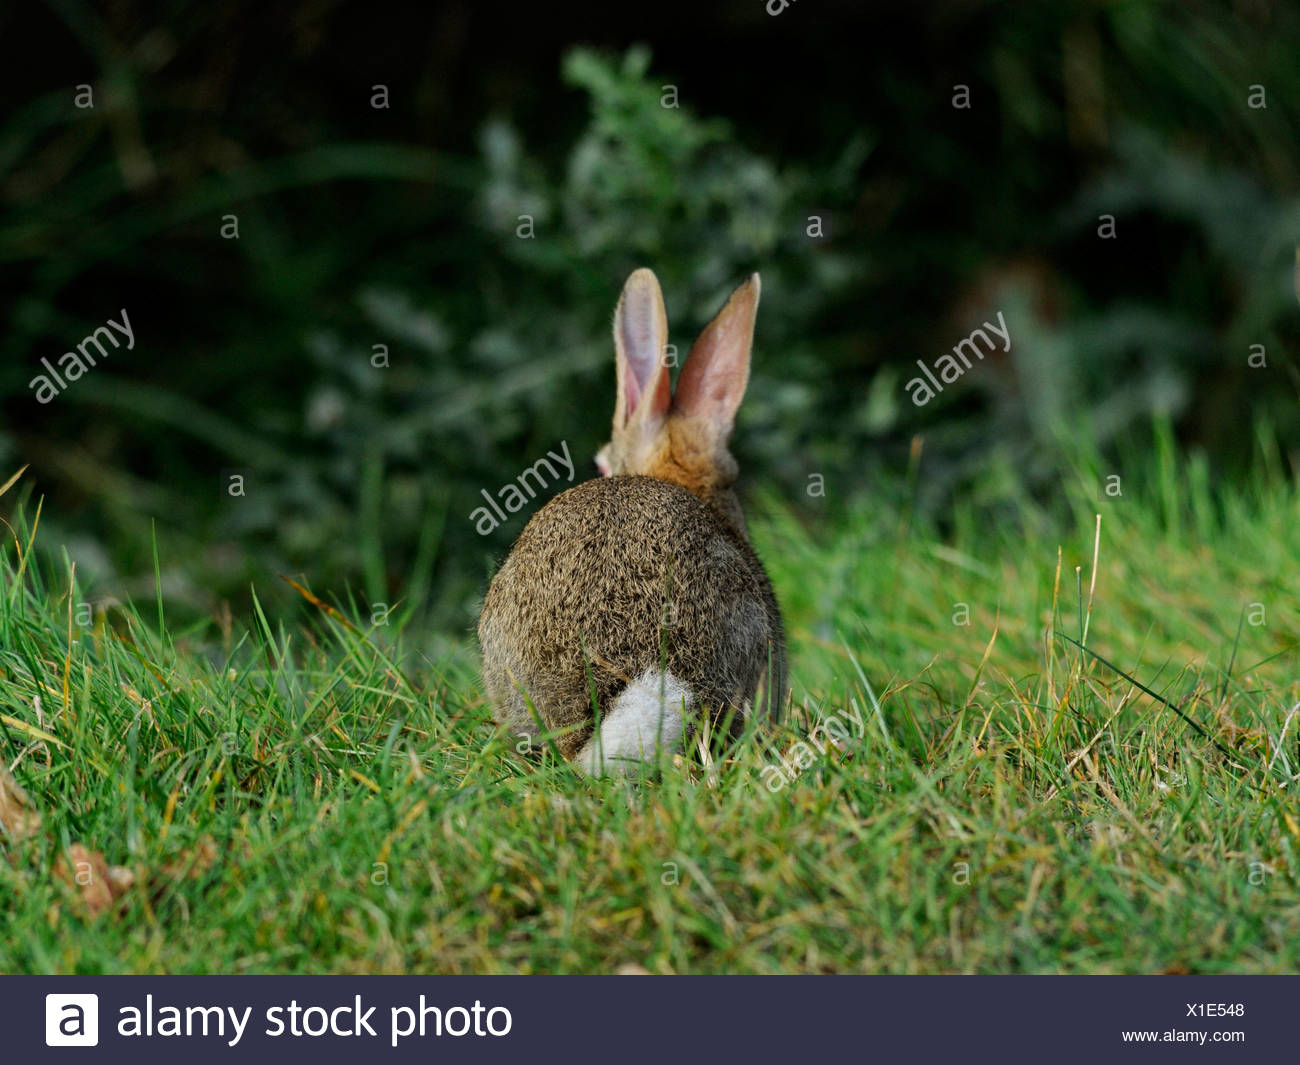 Ein Niedliches Baby Kaninchen Zeigen Schwanze Weisser Hase Stockfotografie Alamy